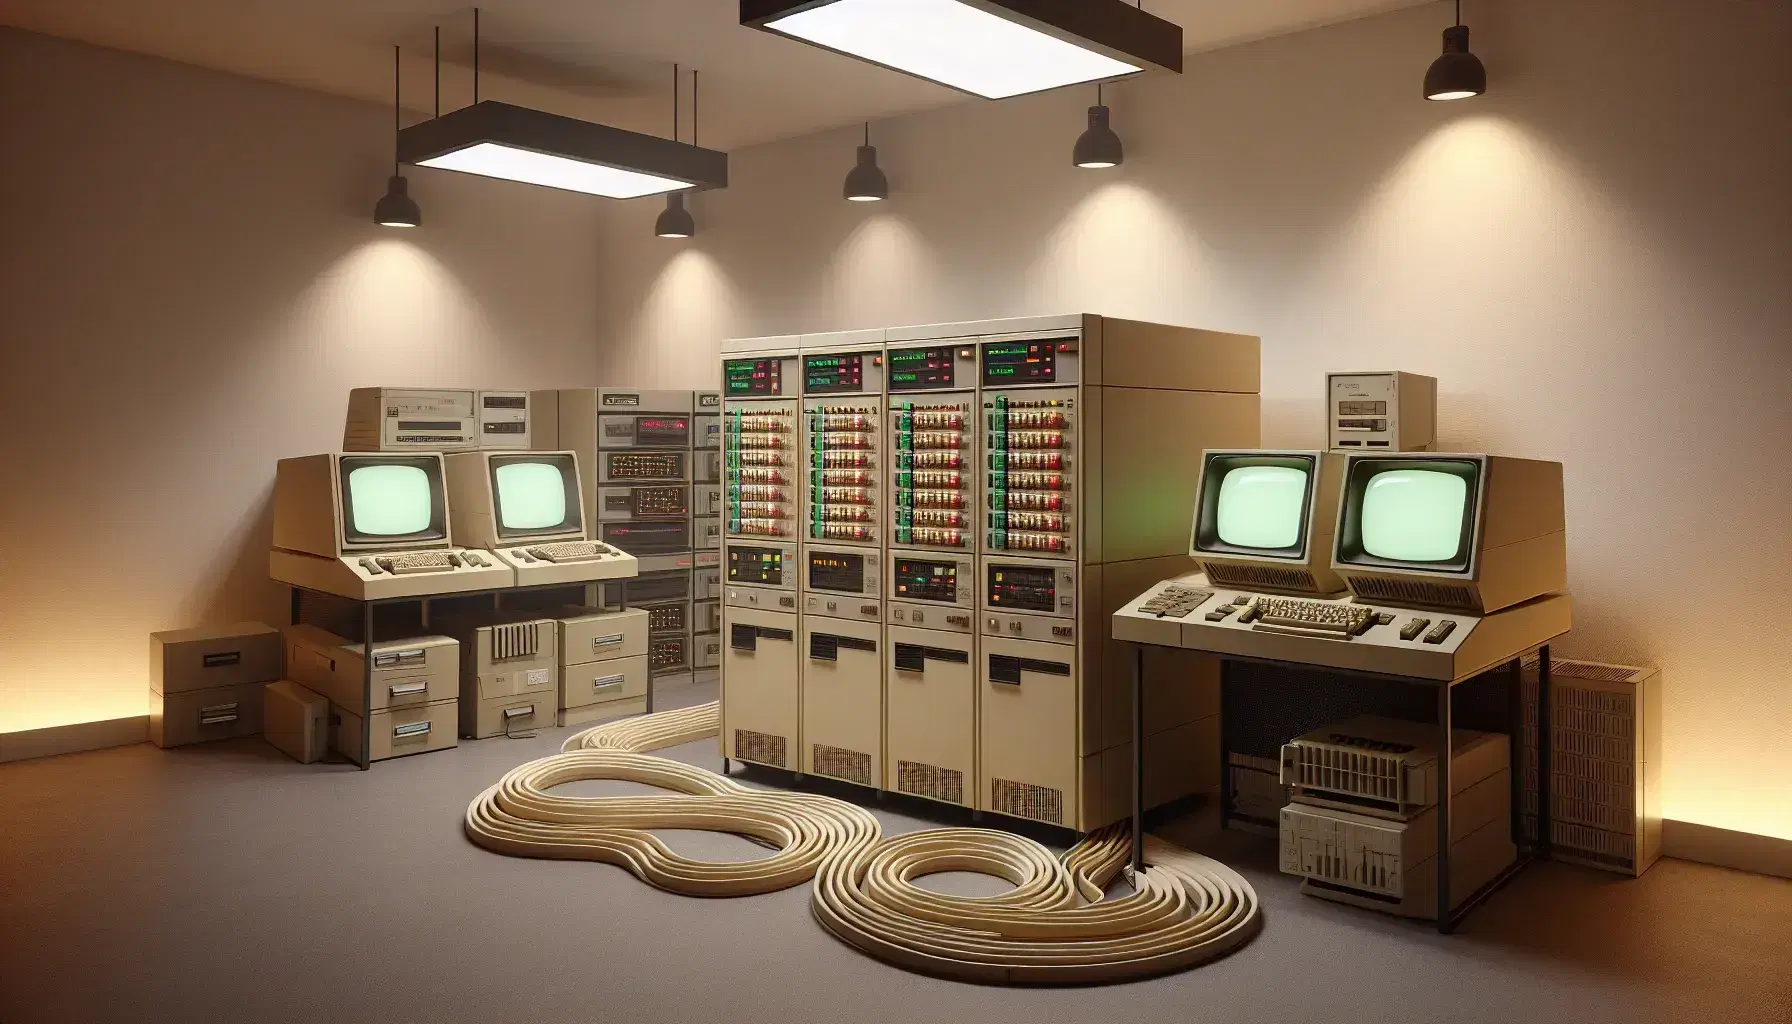 Sala con equipo de computación vintage, incluyendo un mainframe beige con botones iluminados y una impresora de matriz de puntos, rodeado de monitores CRT y teclados sin texto.